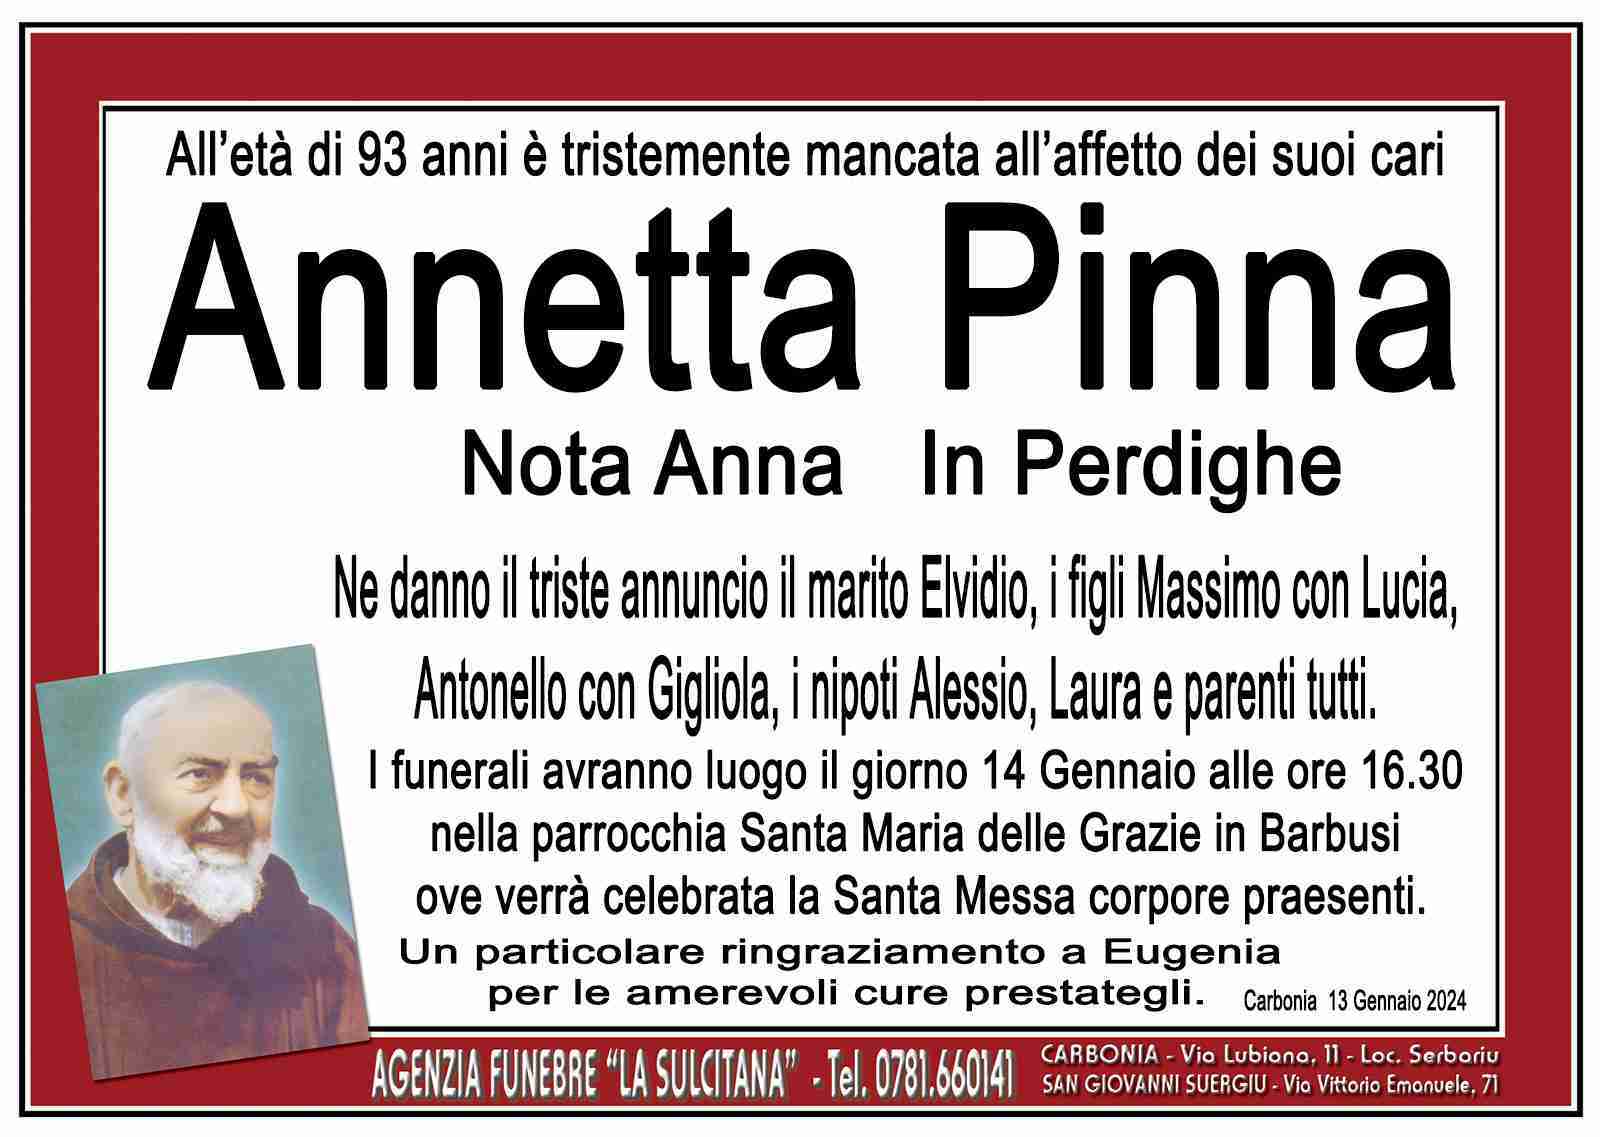 Annetta Pinna